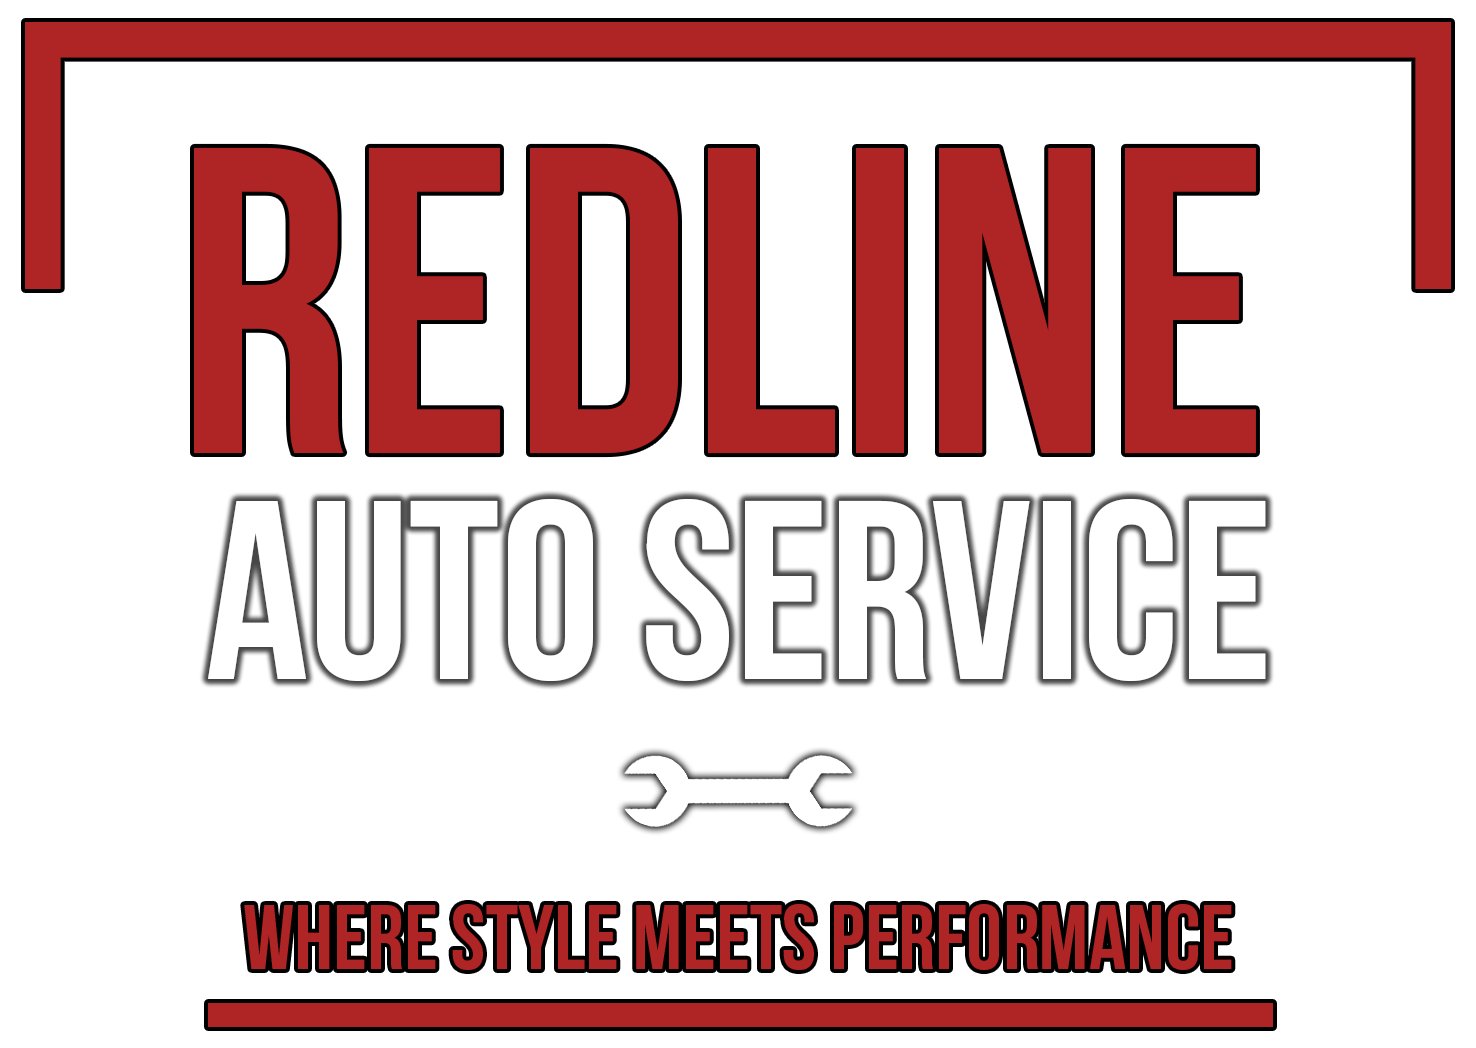 830redline_auto_service_l.png